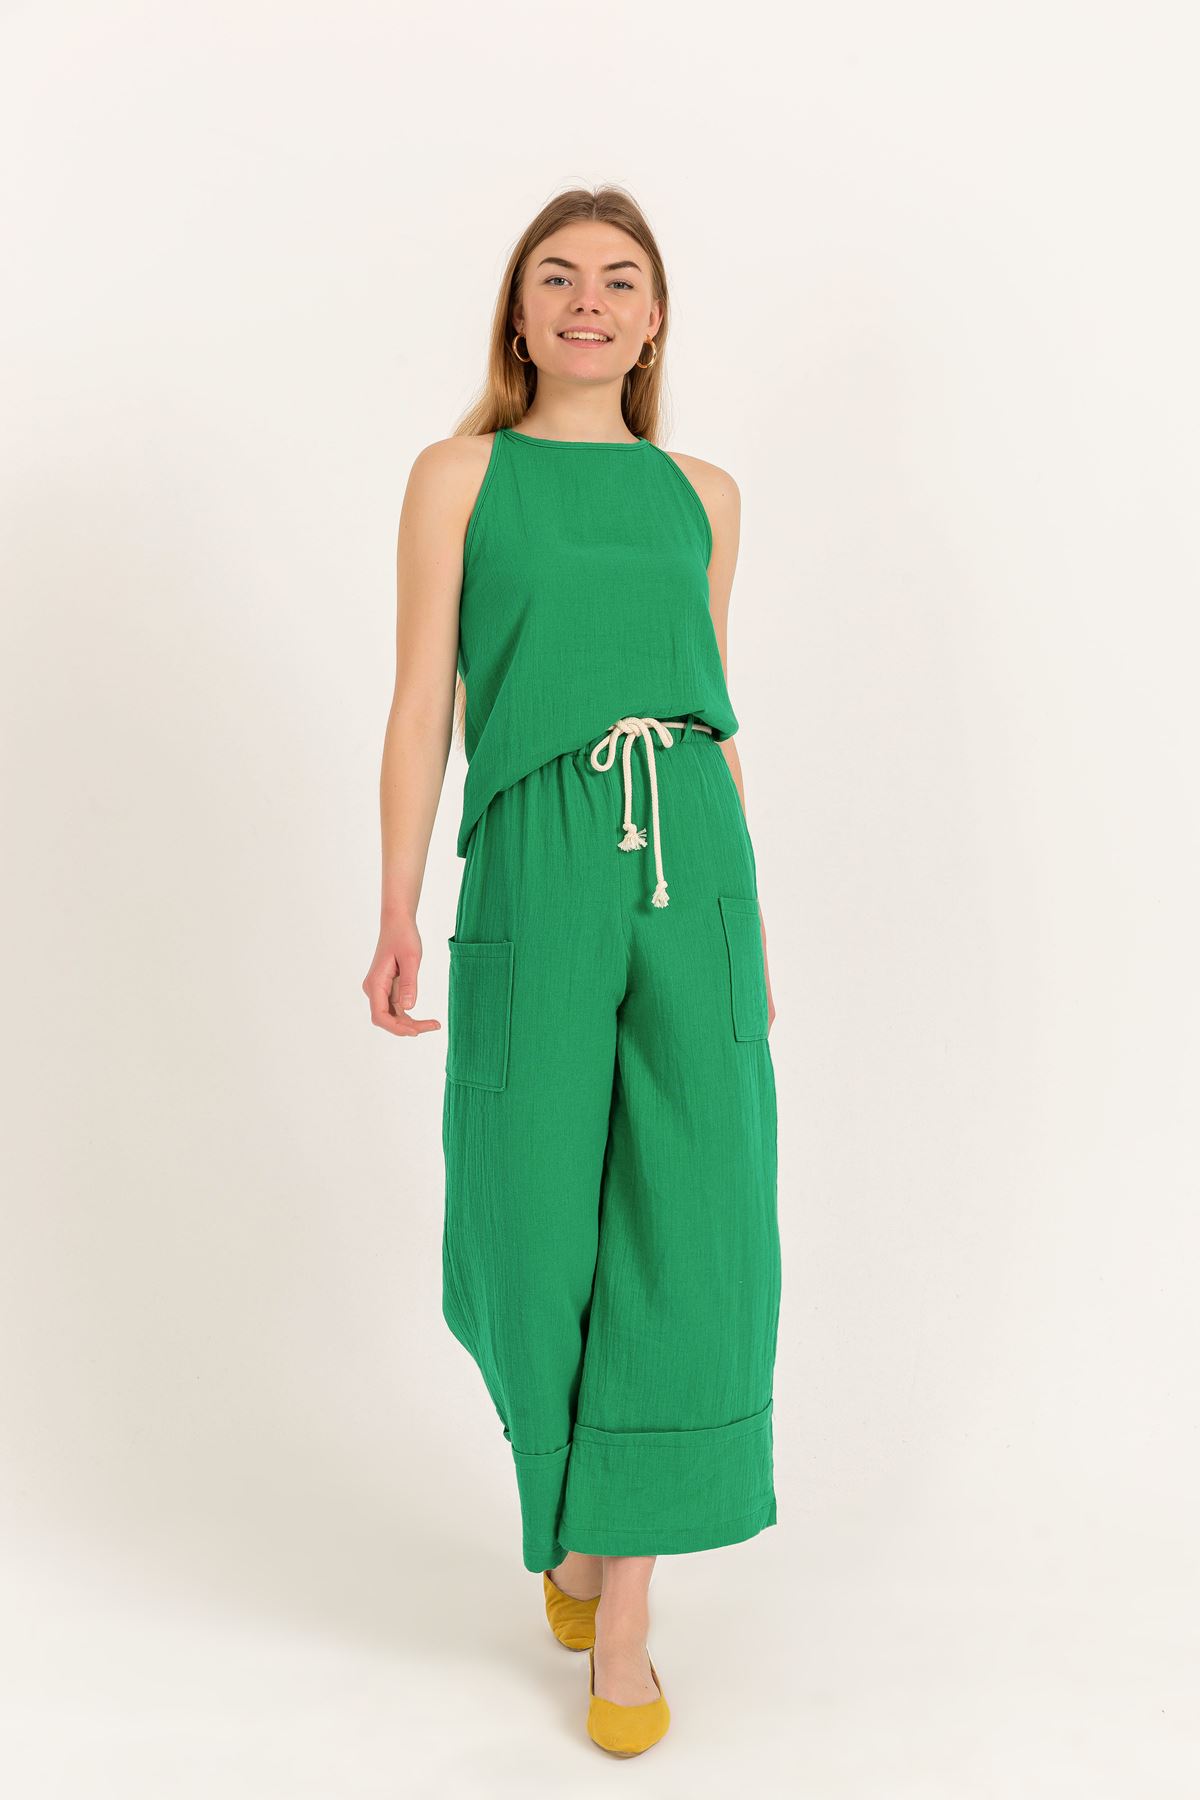 Müslin Kumaş Sırt Detay Nakış İşlemeli Kadın Bluz-Yeşil